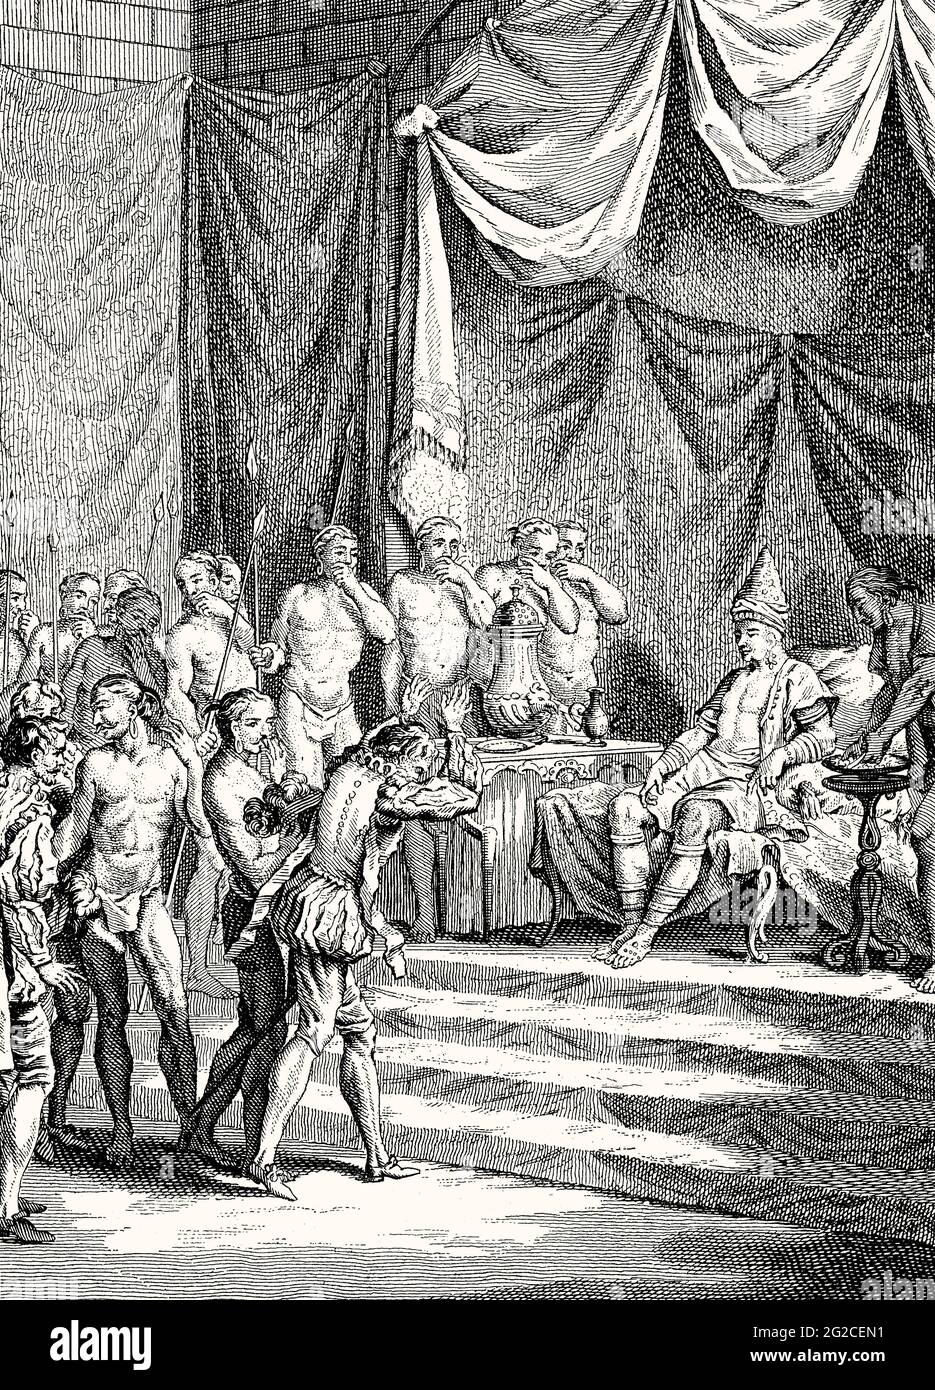 Audience de Vasco da Gama avec Samudiri de Kappadu, Calicut, le 20 mai 1498, aujourd'hui état de Kerala de l'Inde Banque D'Images